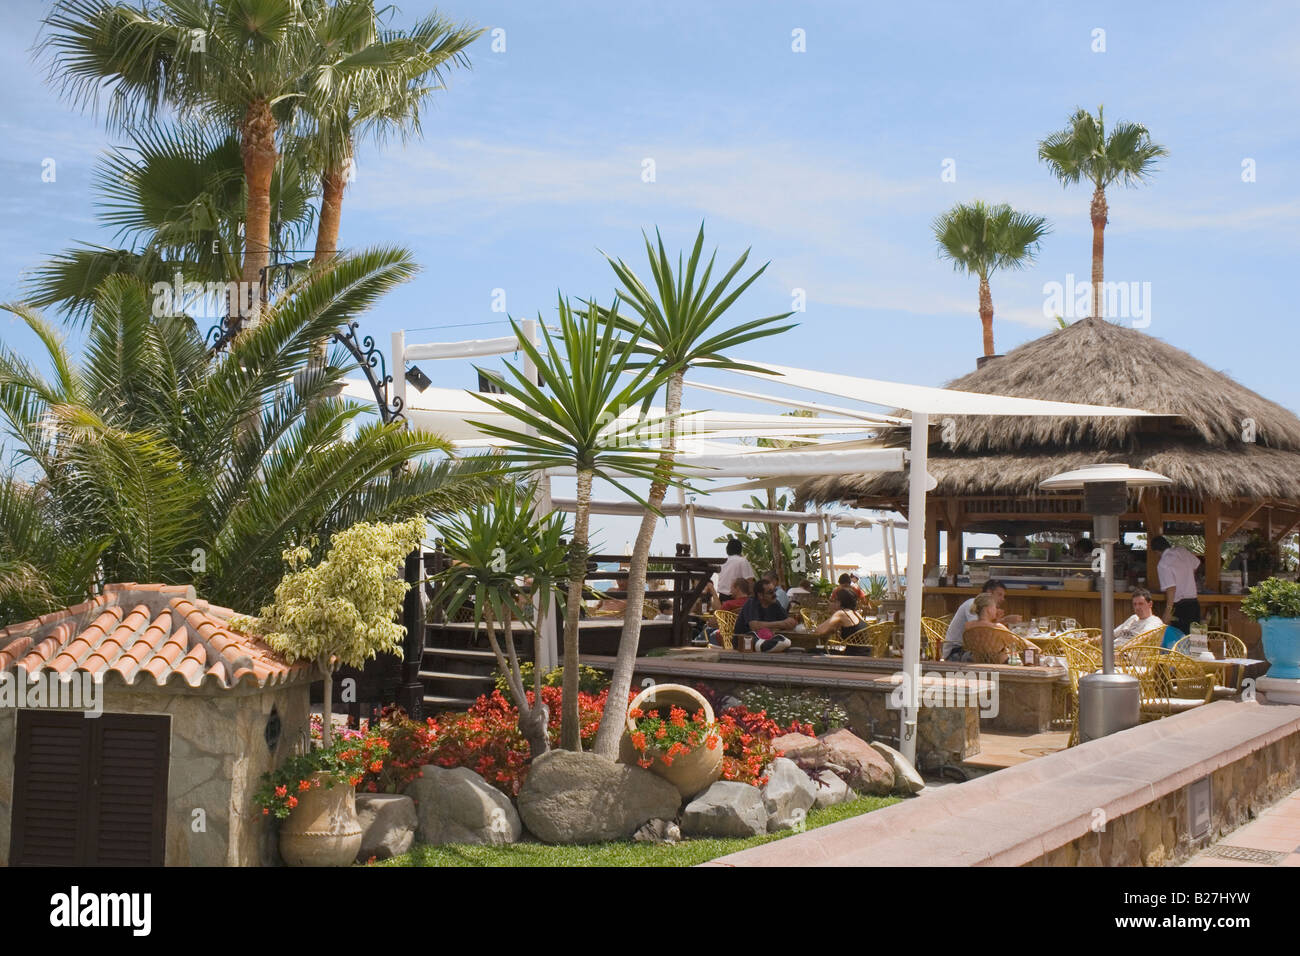 Bar de plage sur la promenade de la Carihuela Torremolinos Costa del Sol Malaga Espagne Banque D'Images